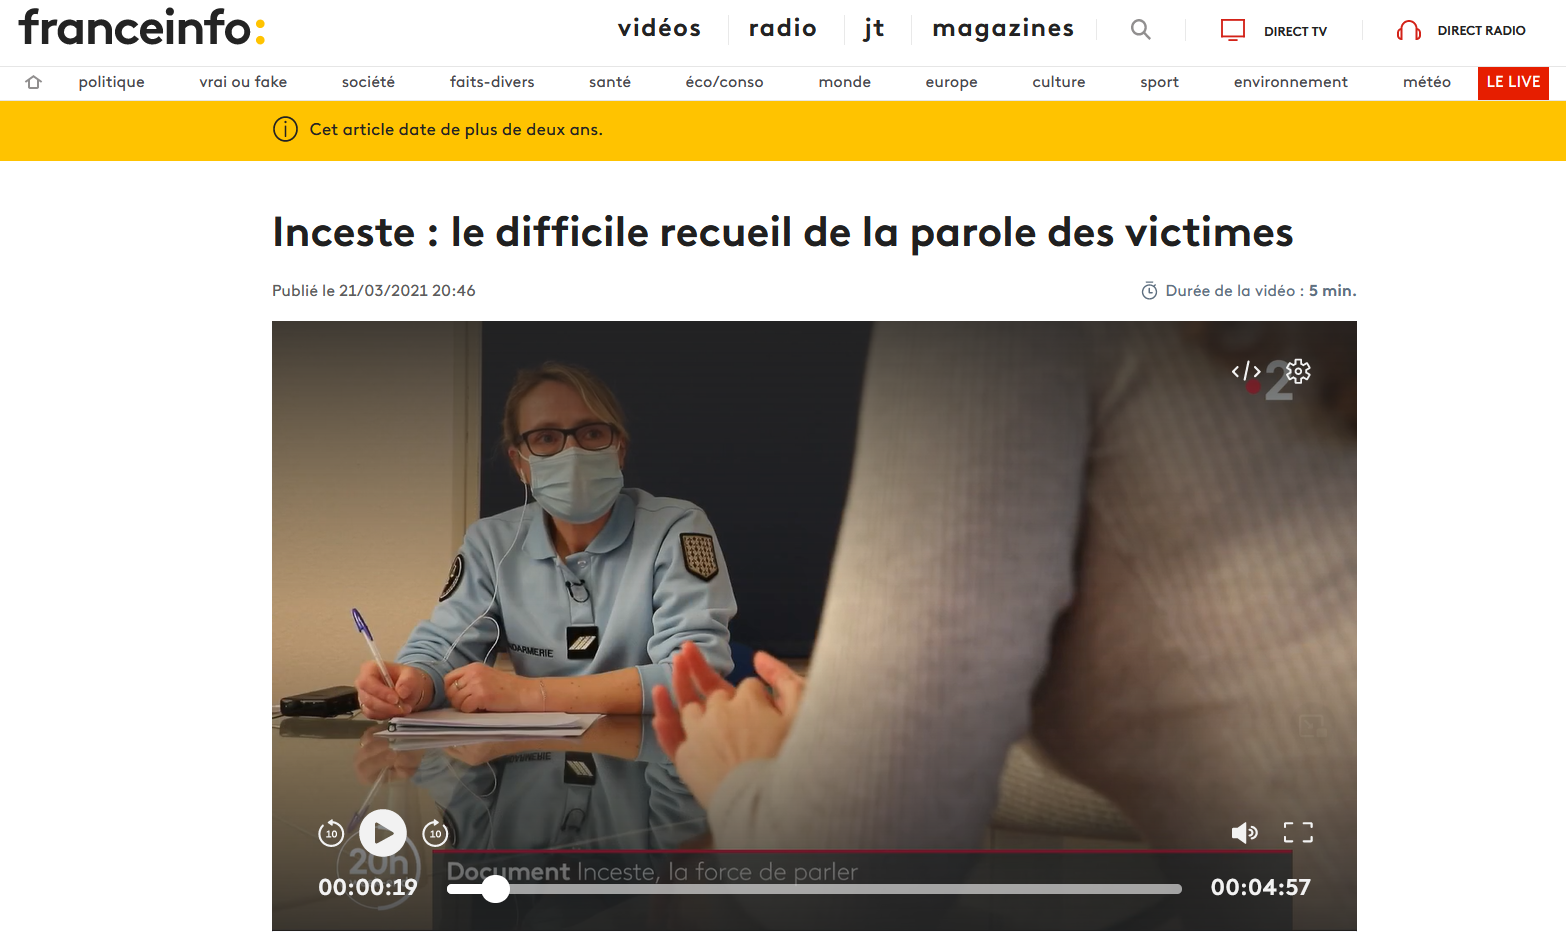 France Info Inceste recueil de la parole des victimes